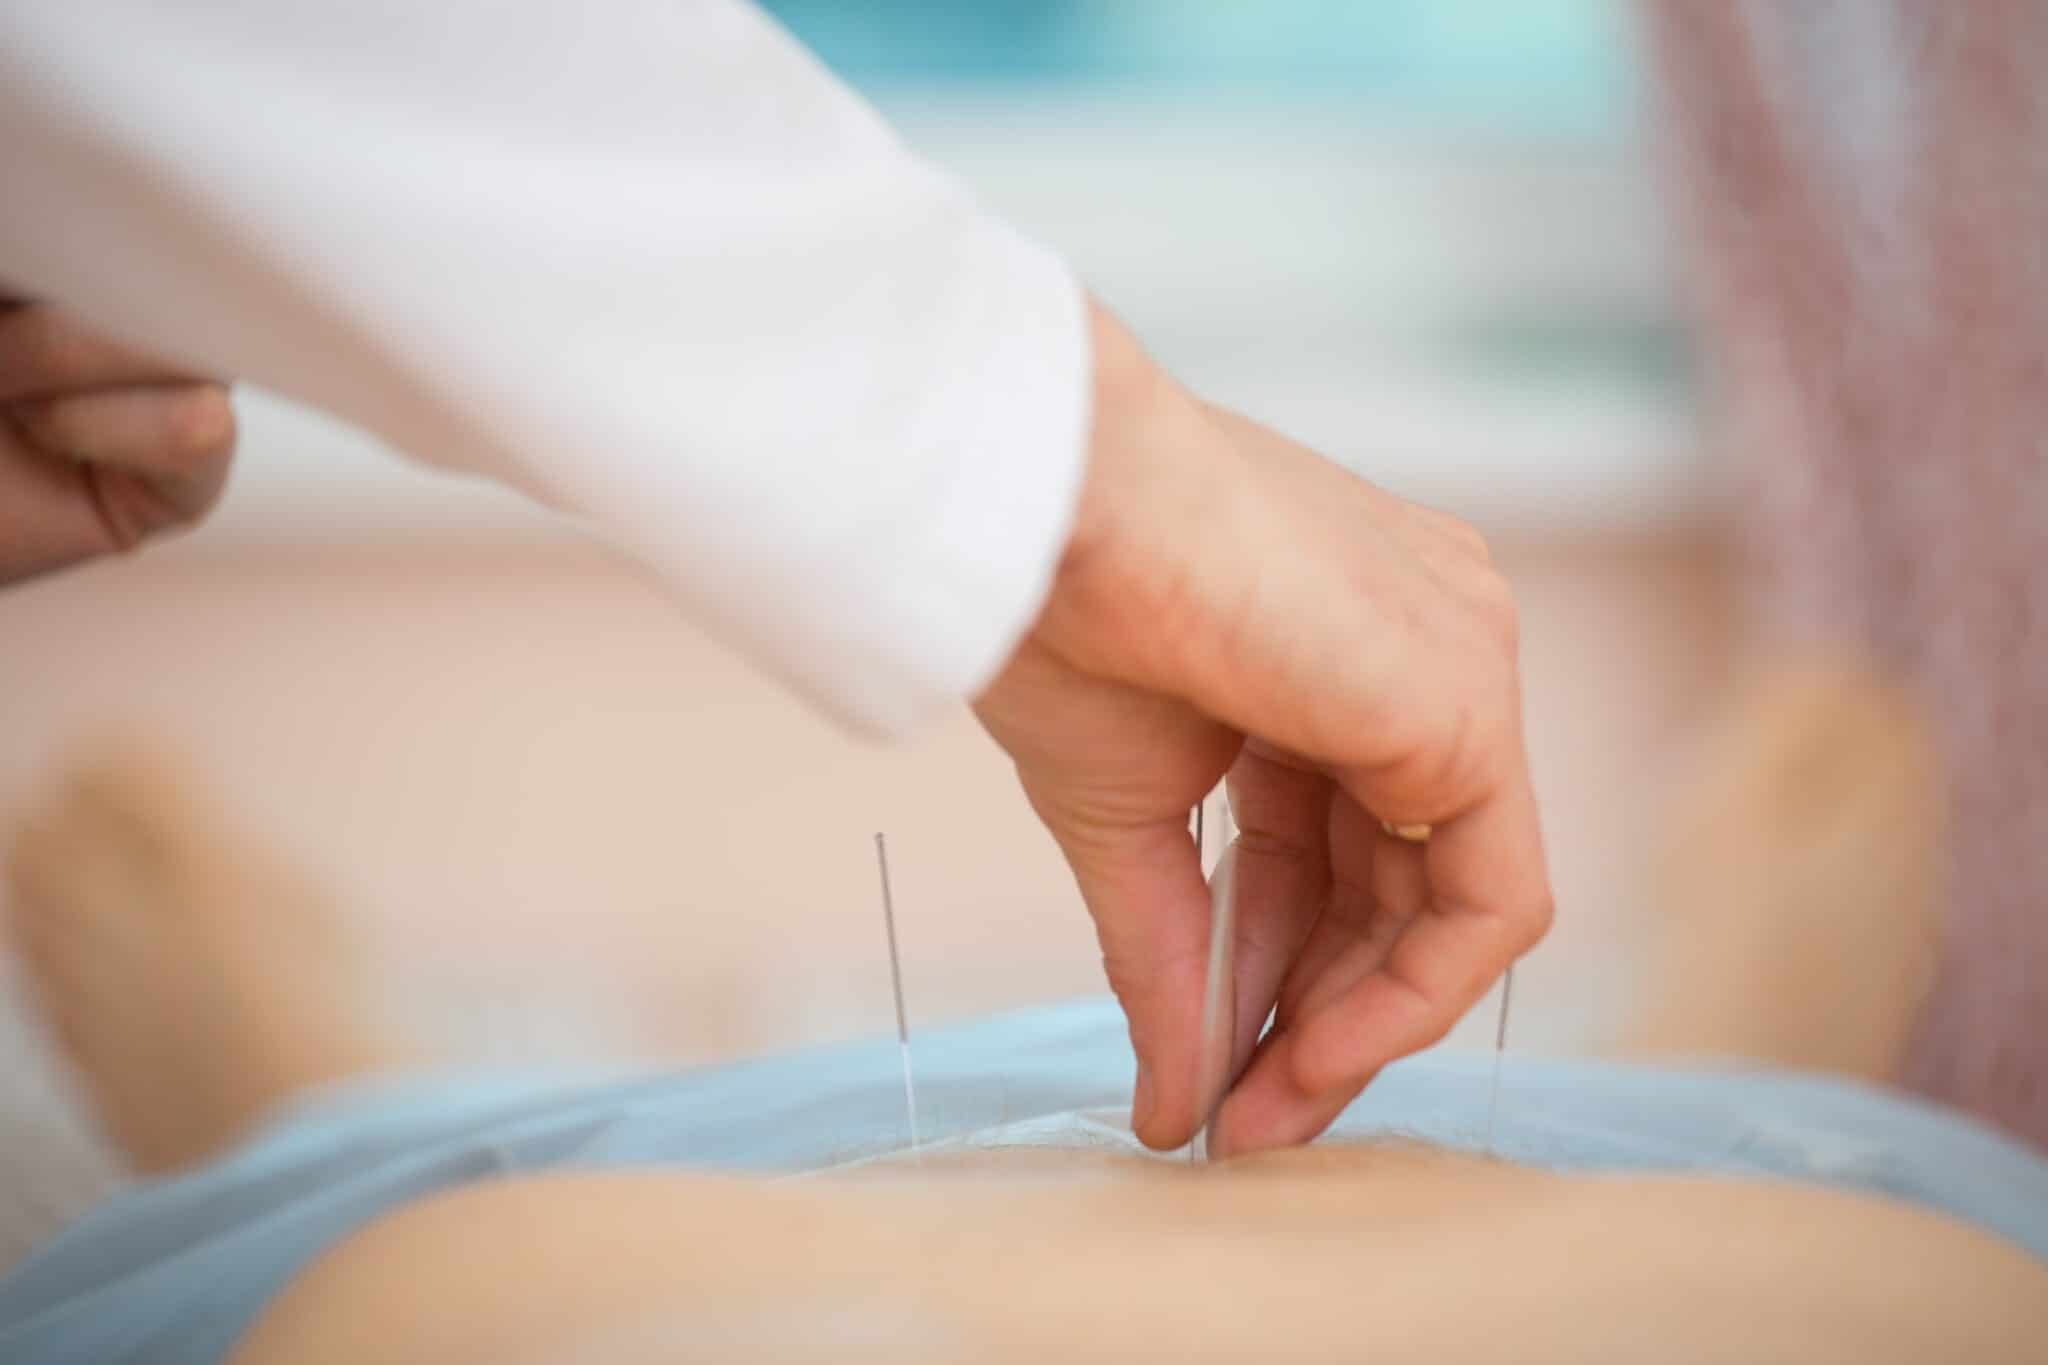 Indsættelse af akupunkturnåle i patient